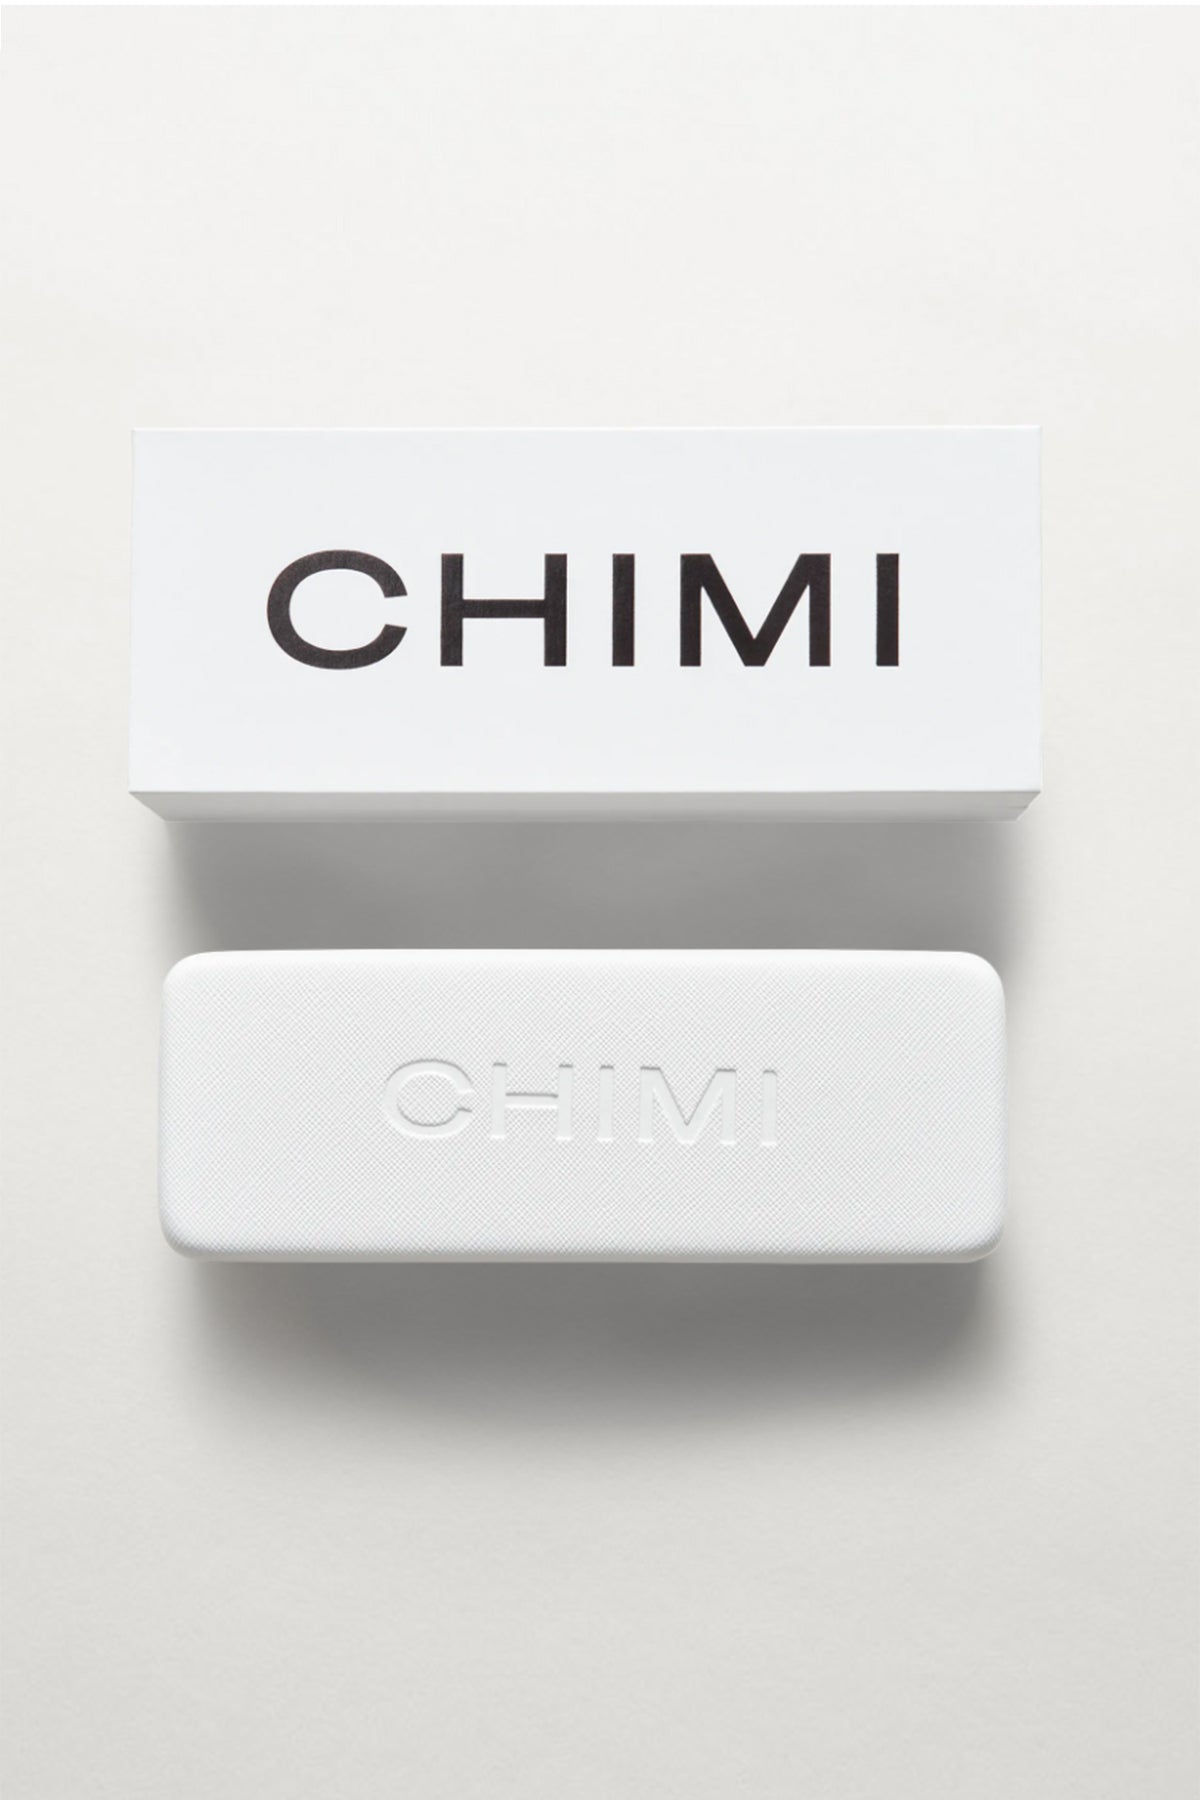   Chimi Sunglasses Case and Box 